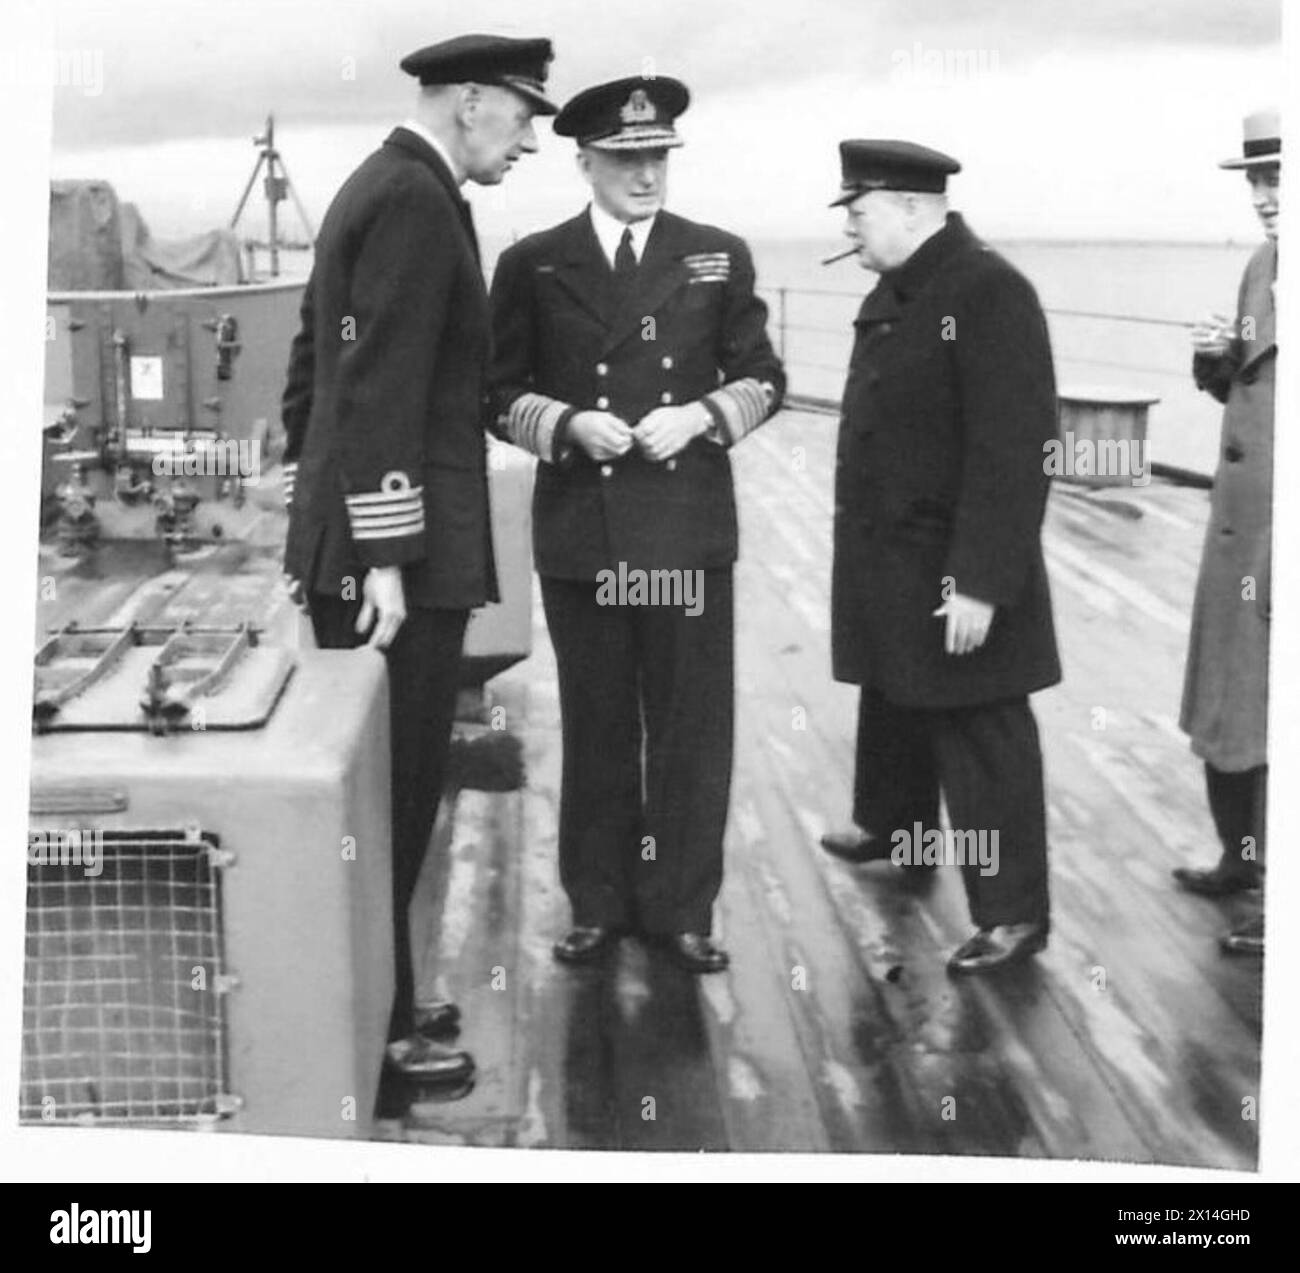 LE PREMIER MINISTRE ET LE PARTI TRAVERSENT L'ATALANTIC POUR RENCONTRER LE PRÉSIDENT ROOSEVELT - le premier ministre, le capitaine J.C. Leach (capitaine du HMS Prince of Wales) et l'amiral Sir Dudley Pound (1er Lord de mer) à bord du HMS Prince of Wales British Army Banque D'Images